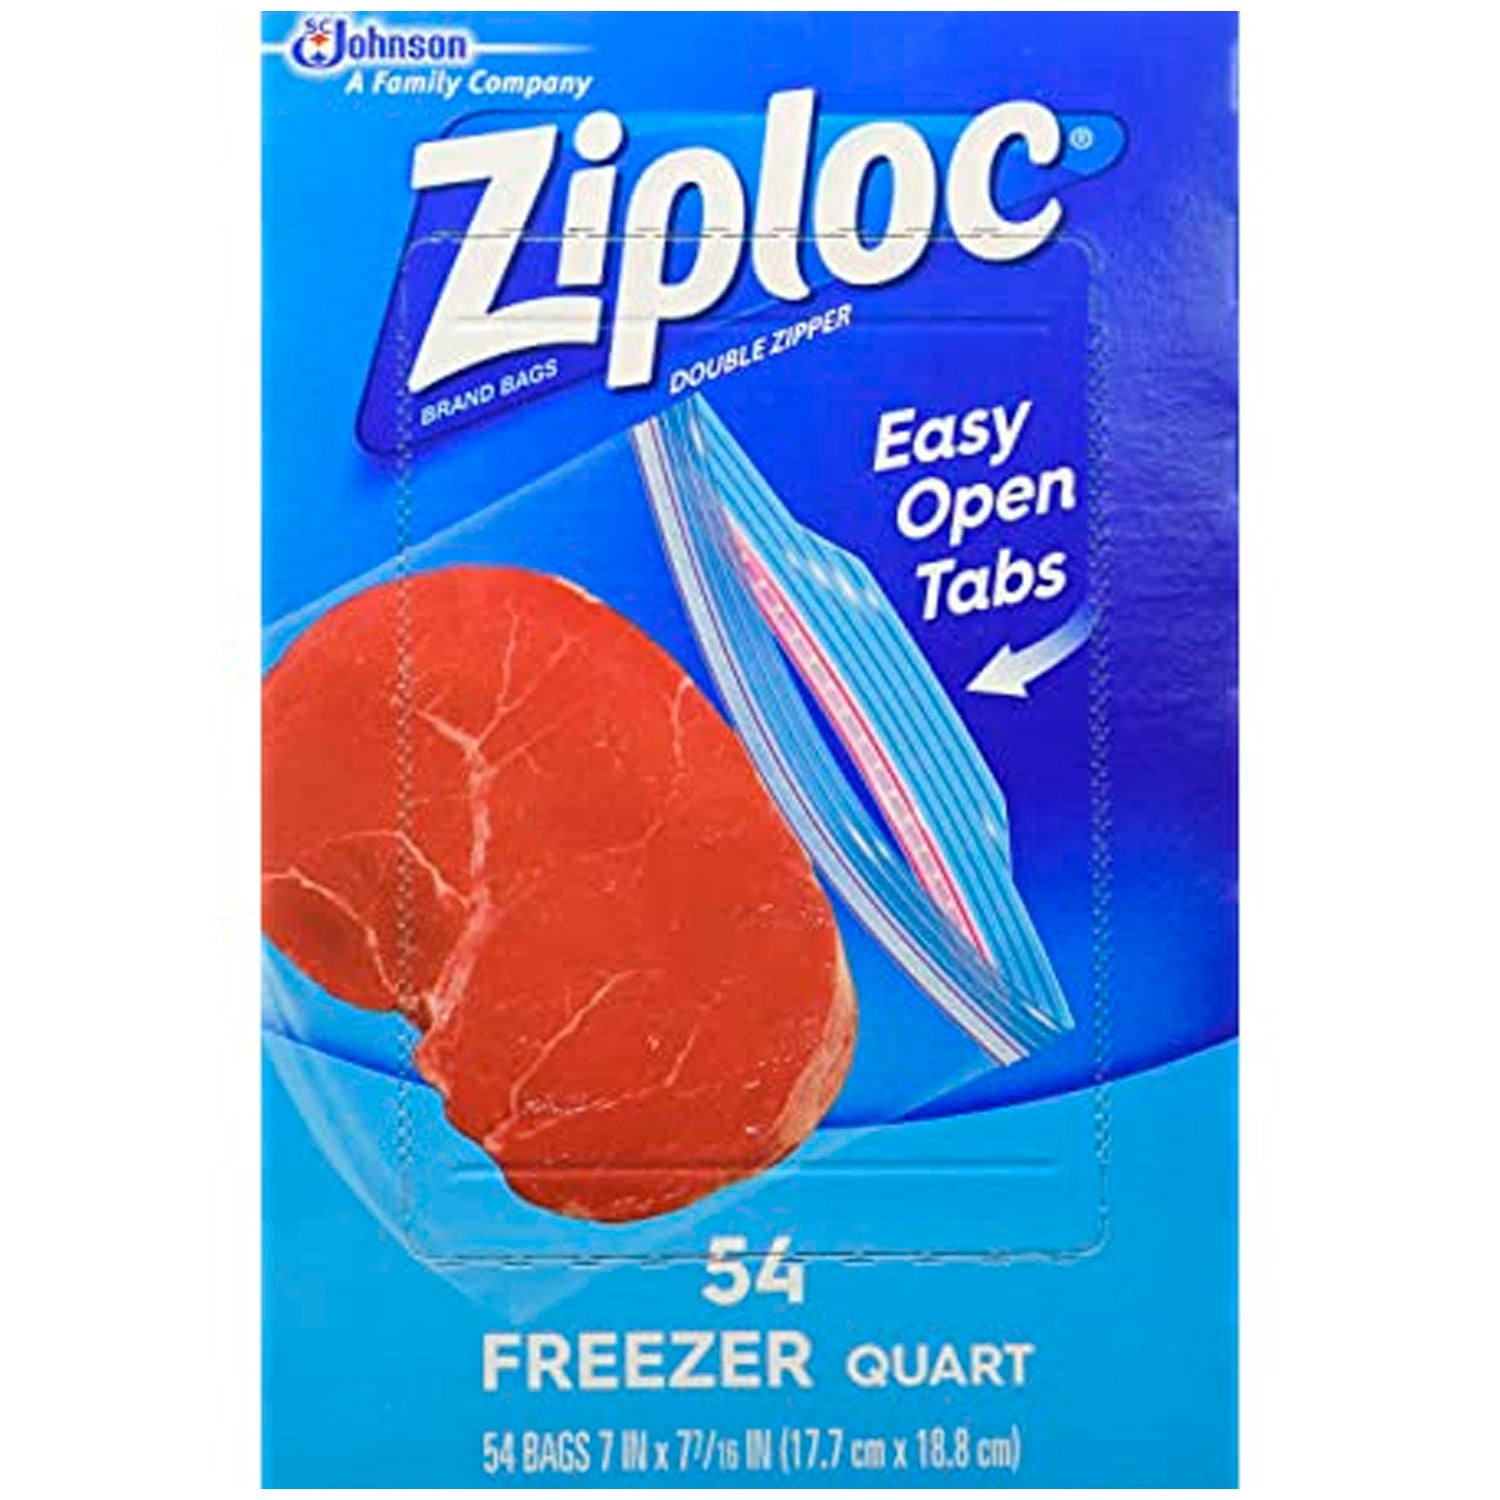 https://contarmarket.com/cdn/shop/products/ziploc-freezer-wuart-bags-54-ct.jpg?v=1615584950